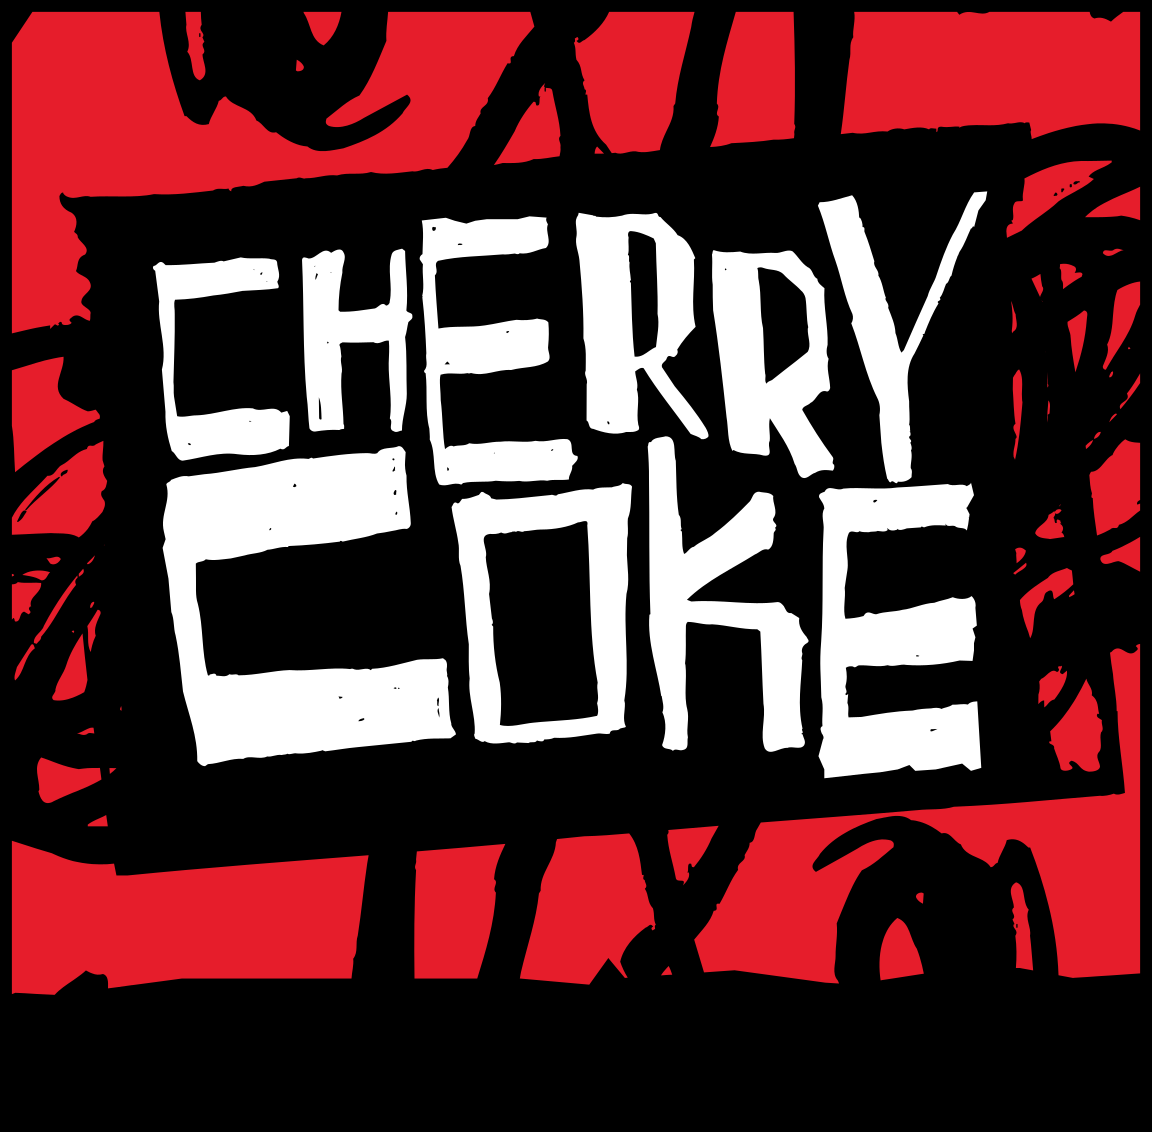 Coca-Cola Cherry - Wikipedia